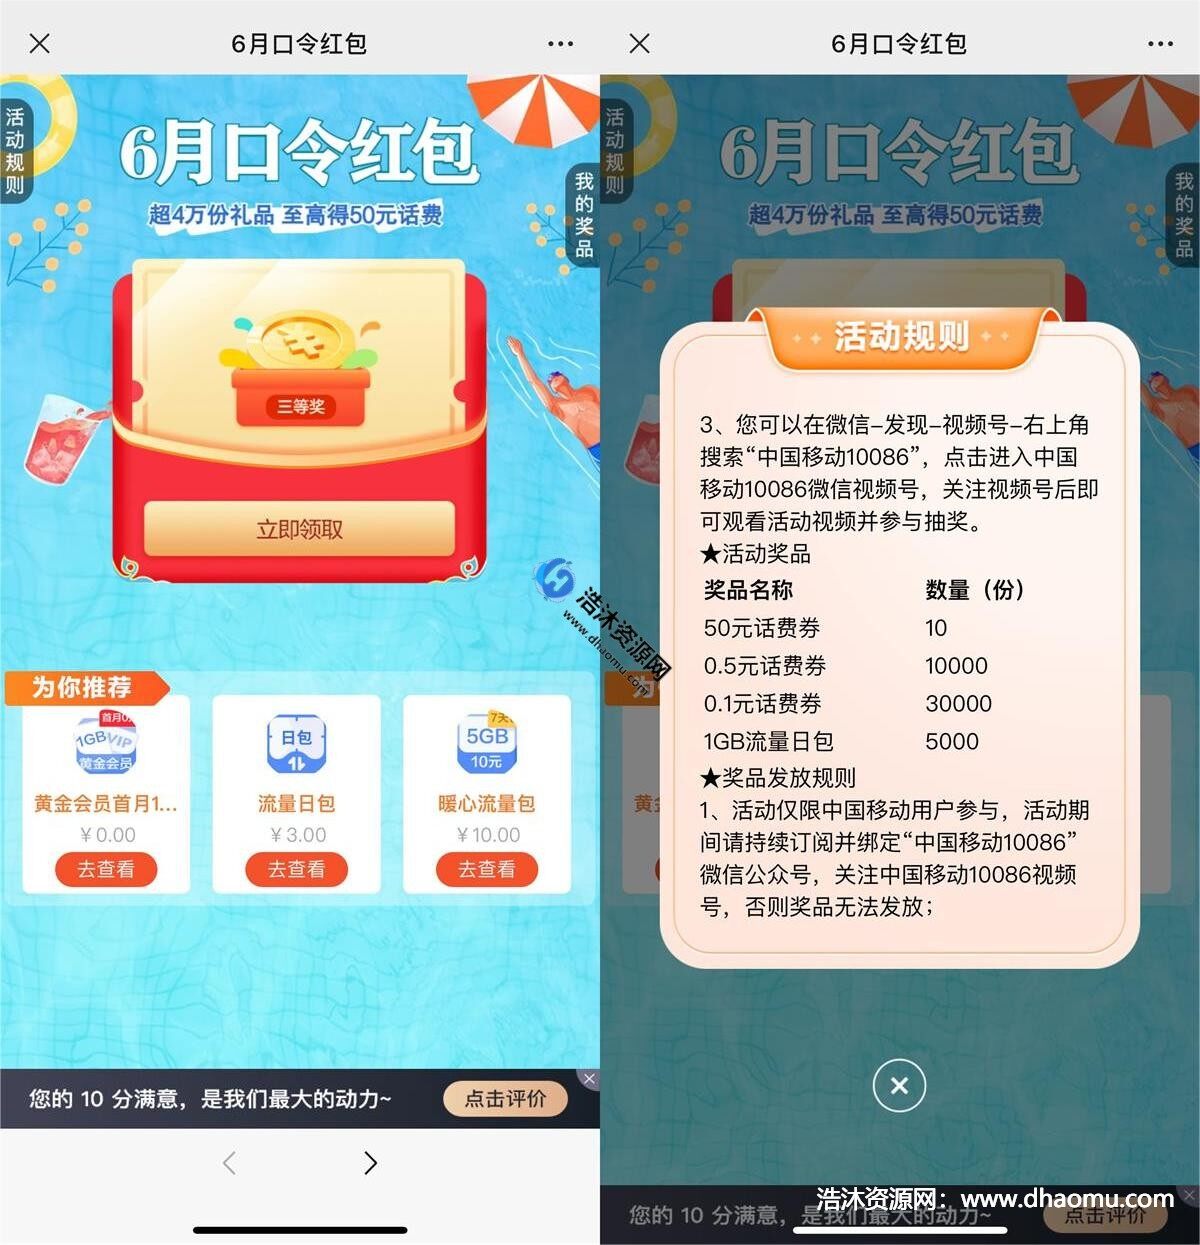 中国移动用户6月口令红包每天免费抽取0.1~50元话费券